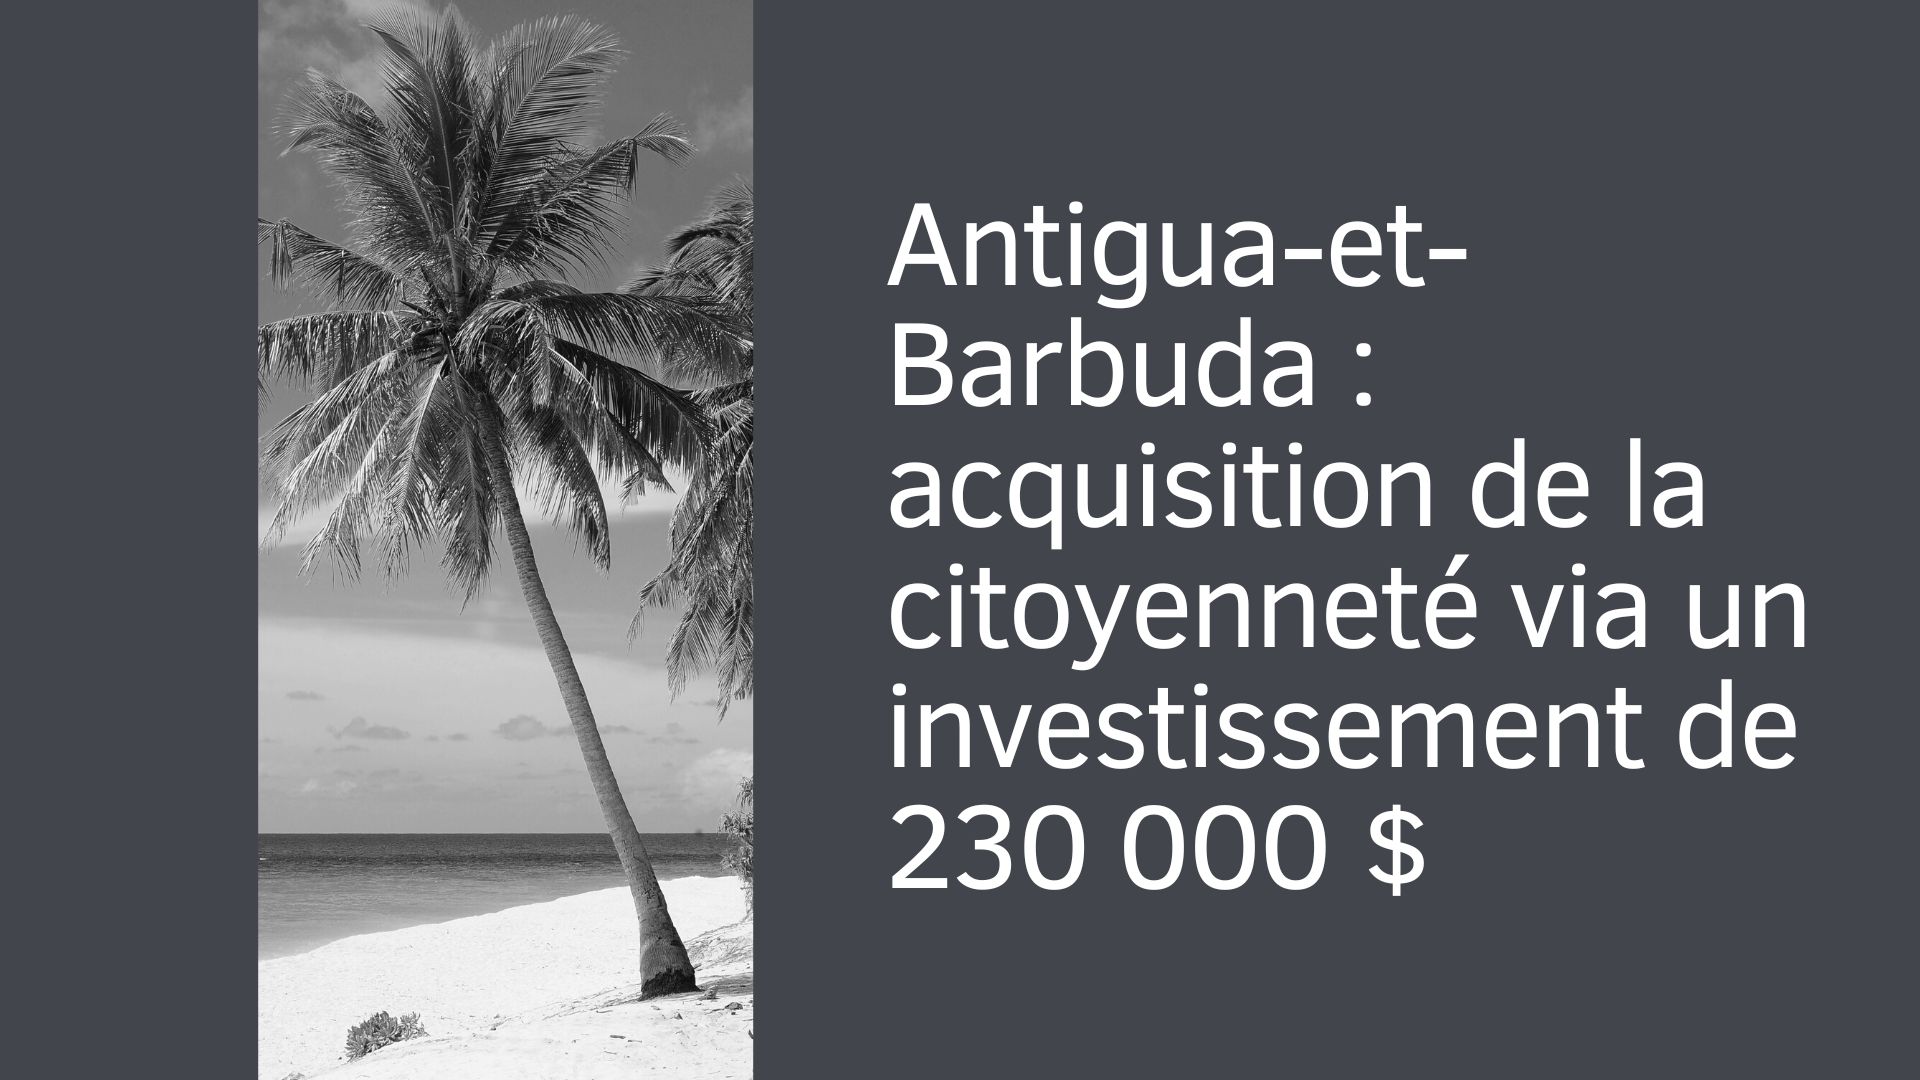 Antigua-et-Barbuda : acquisition de la citoyenneté via un investissement de 230 000 $